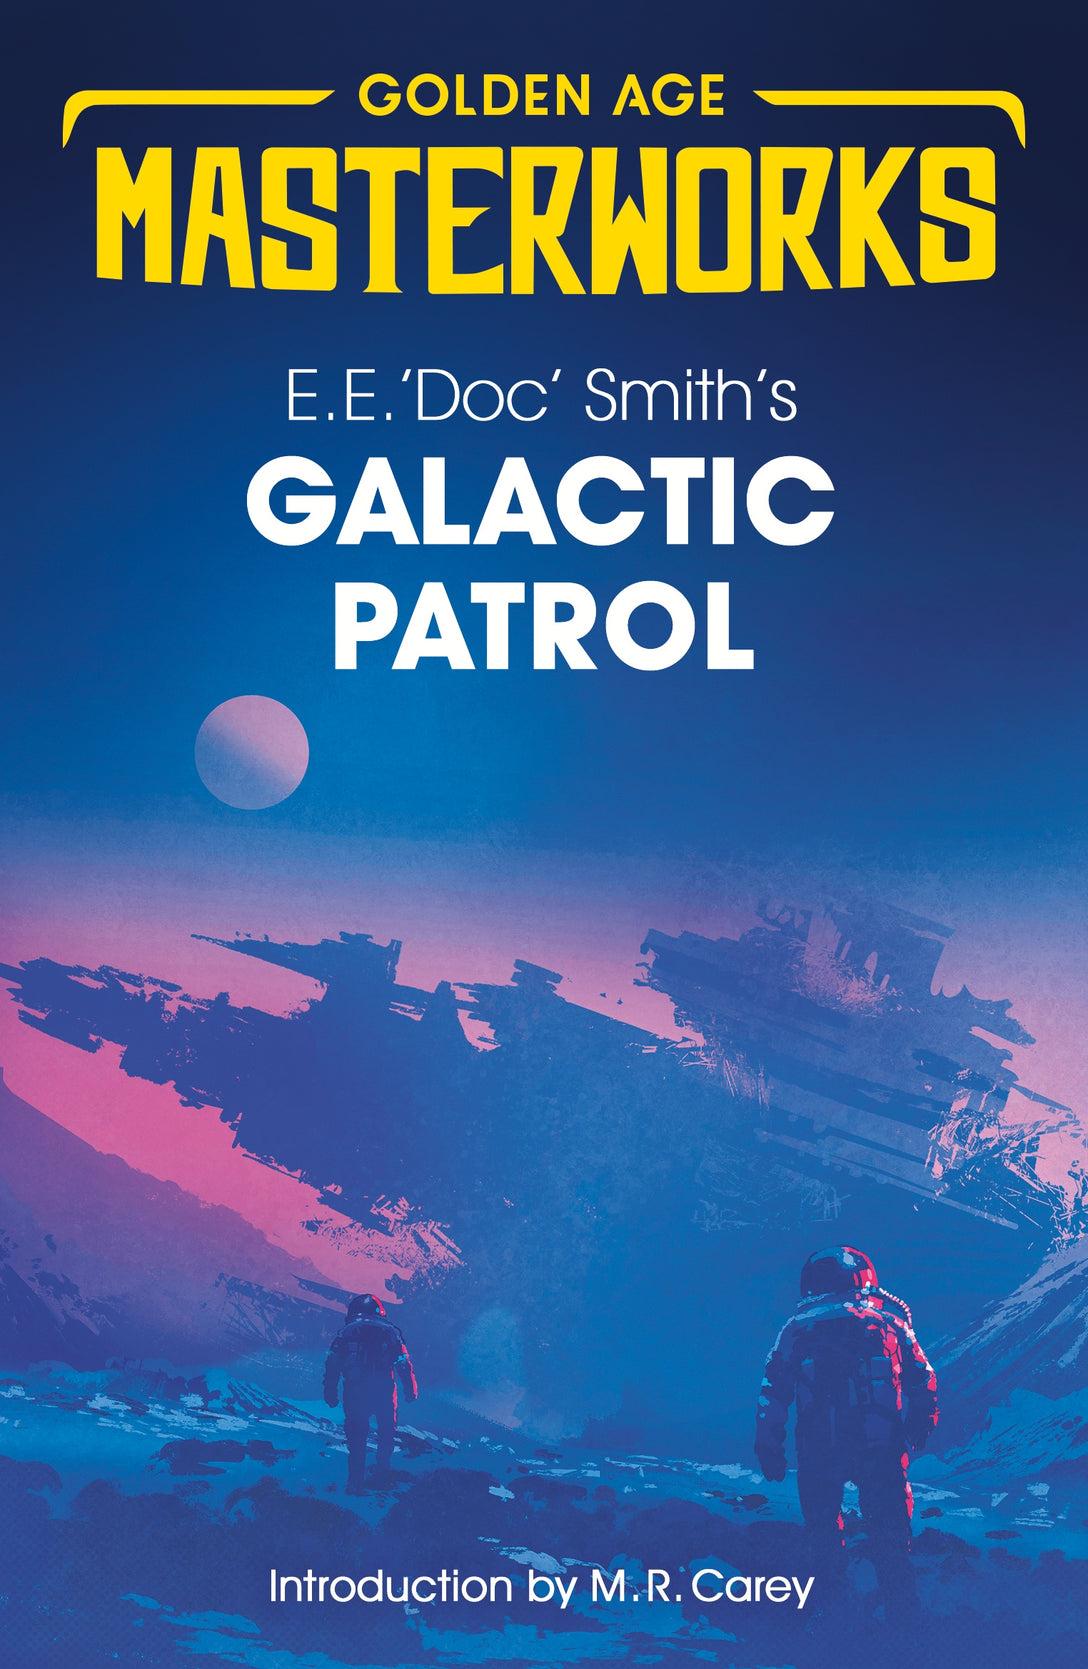 Galactic Patrol by E.E. 'Doc' Smith